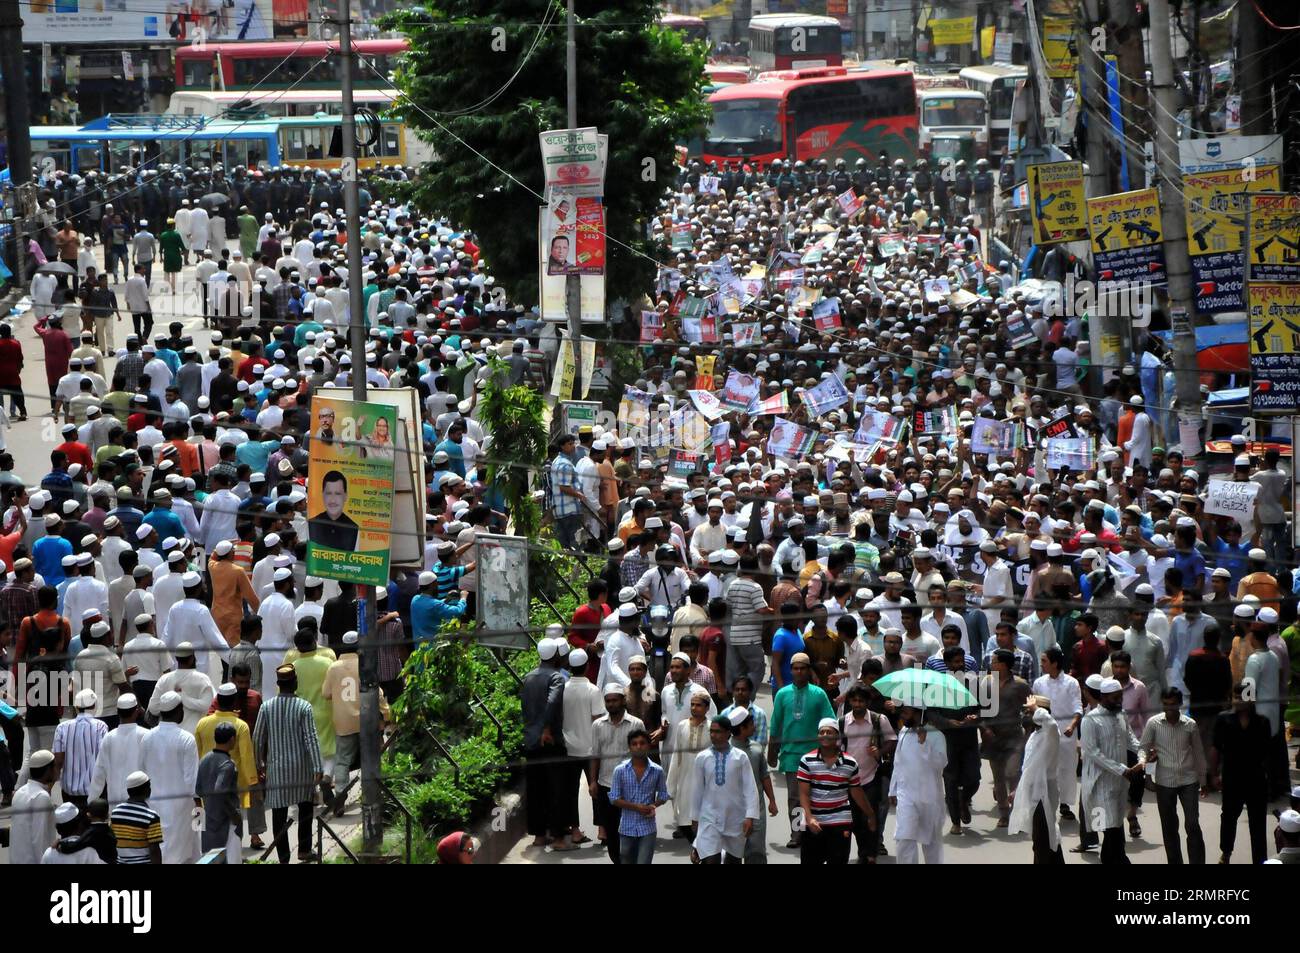 (140718) -- DHAKA, 18 juillet 2014 (Xinhua) -- des musulmans bangladais participent à un rassemblement de protestation contre les raids aériens israéliens en cours sur la bande de Gaza, qui ont fait plus de 260 morts et plus de 1 700 blessés, à Dhaka, Bangladesh, le 18 juillet 2014. Des milliers de personnes ont pris part à la manifestation devant la Mosquée nationale de Dhaka contre les frappes aériennes israéliennes sur la bande de Gaza vendredi. (Xinhua/Shariful Islam) BANGLADESH-DHAKA-ISRAEL-PROTEST PUBLICATIONxNOTxINxCHN Dhaka juillet 18 2014 XINHUA des musulmans bangladais participent à un rassemblement de protestation contre les raids aériens israéliens en cours SUR la bande de Gaza Thatcher est parti Banque D'Images